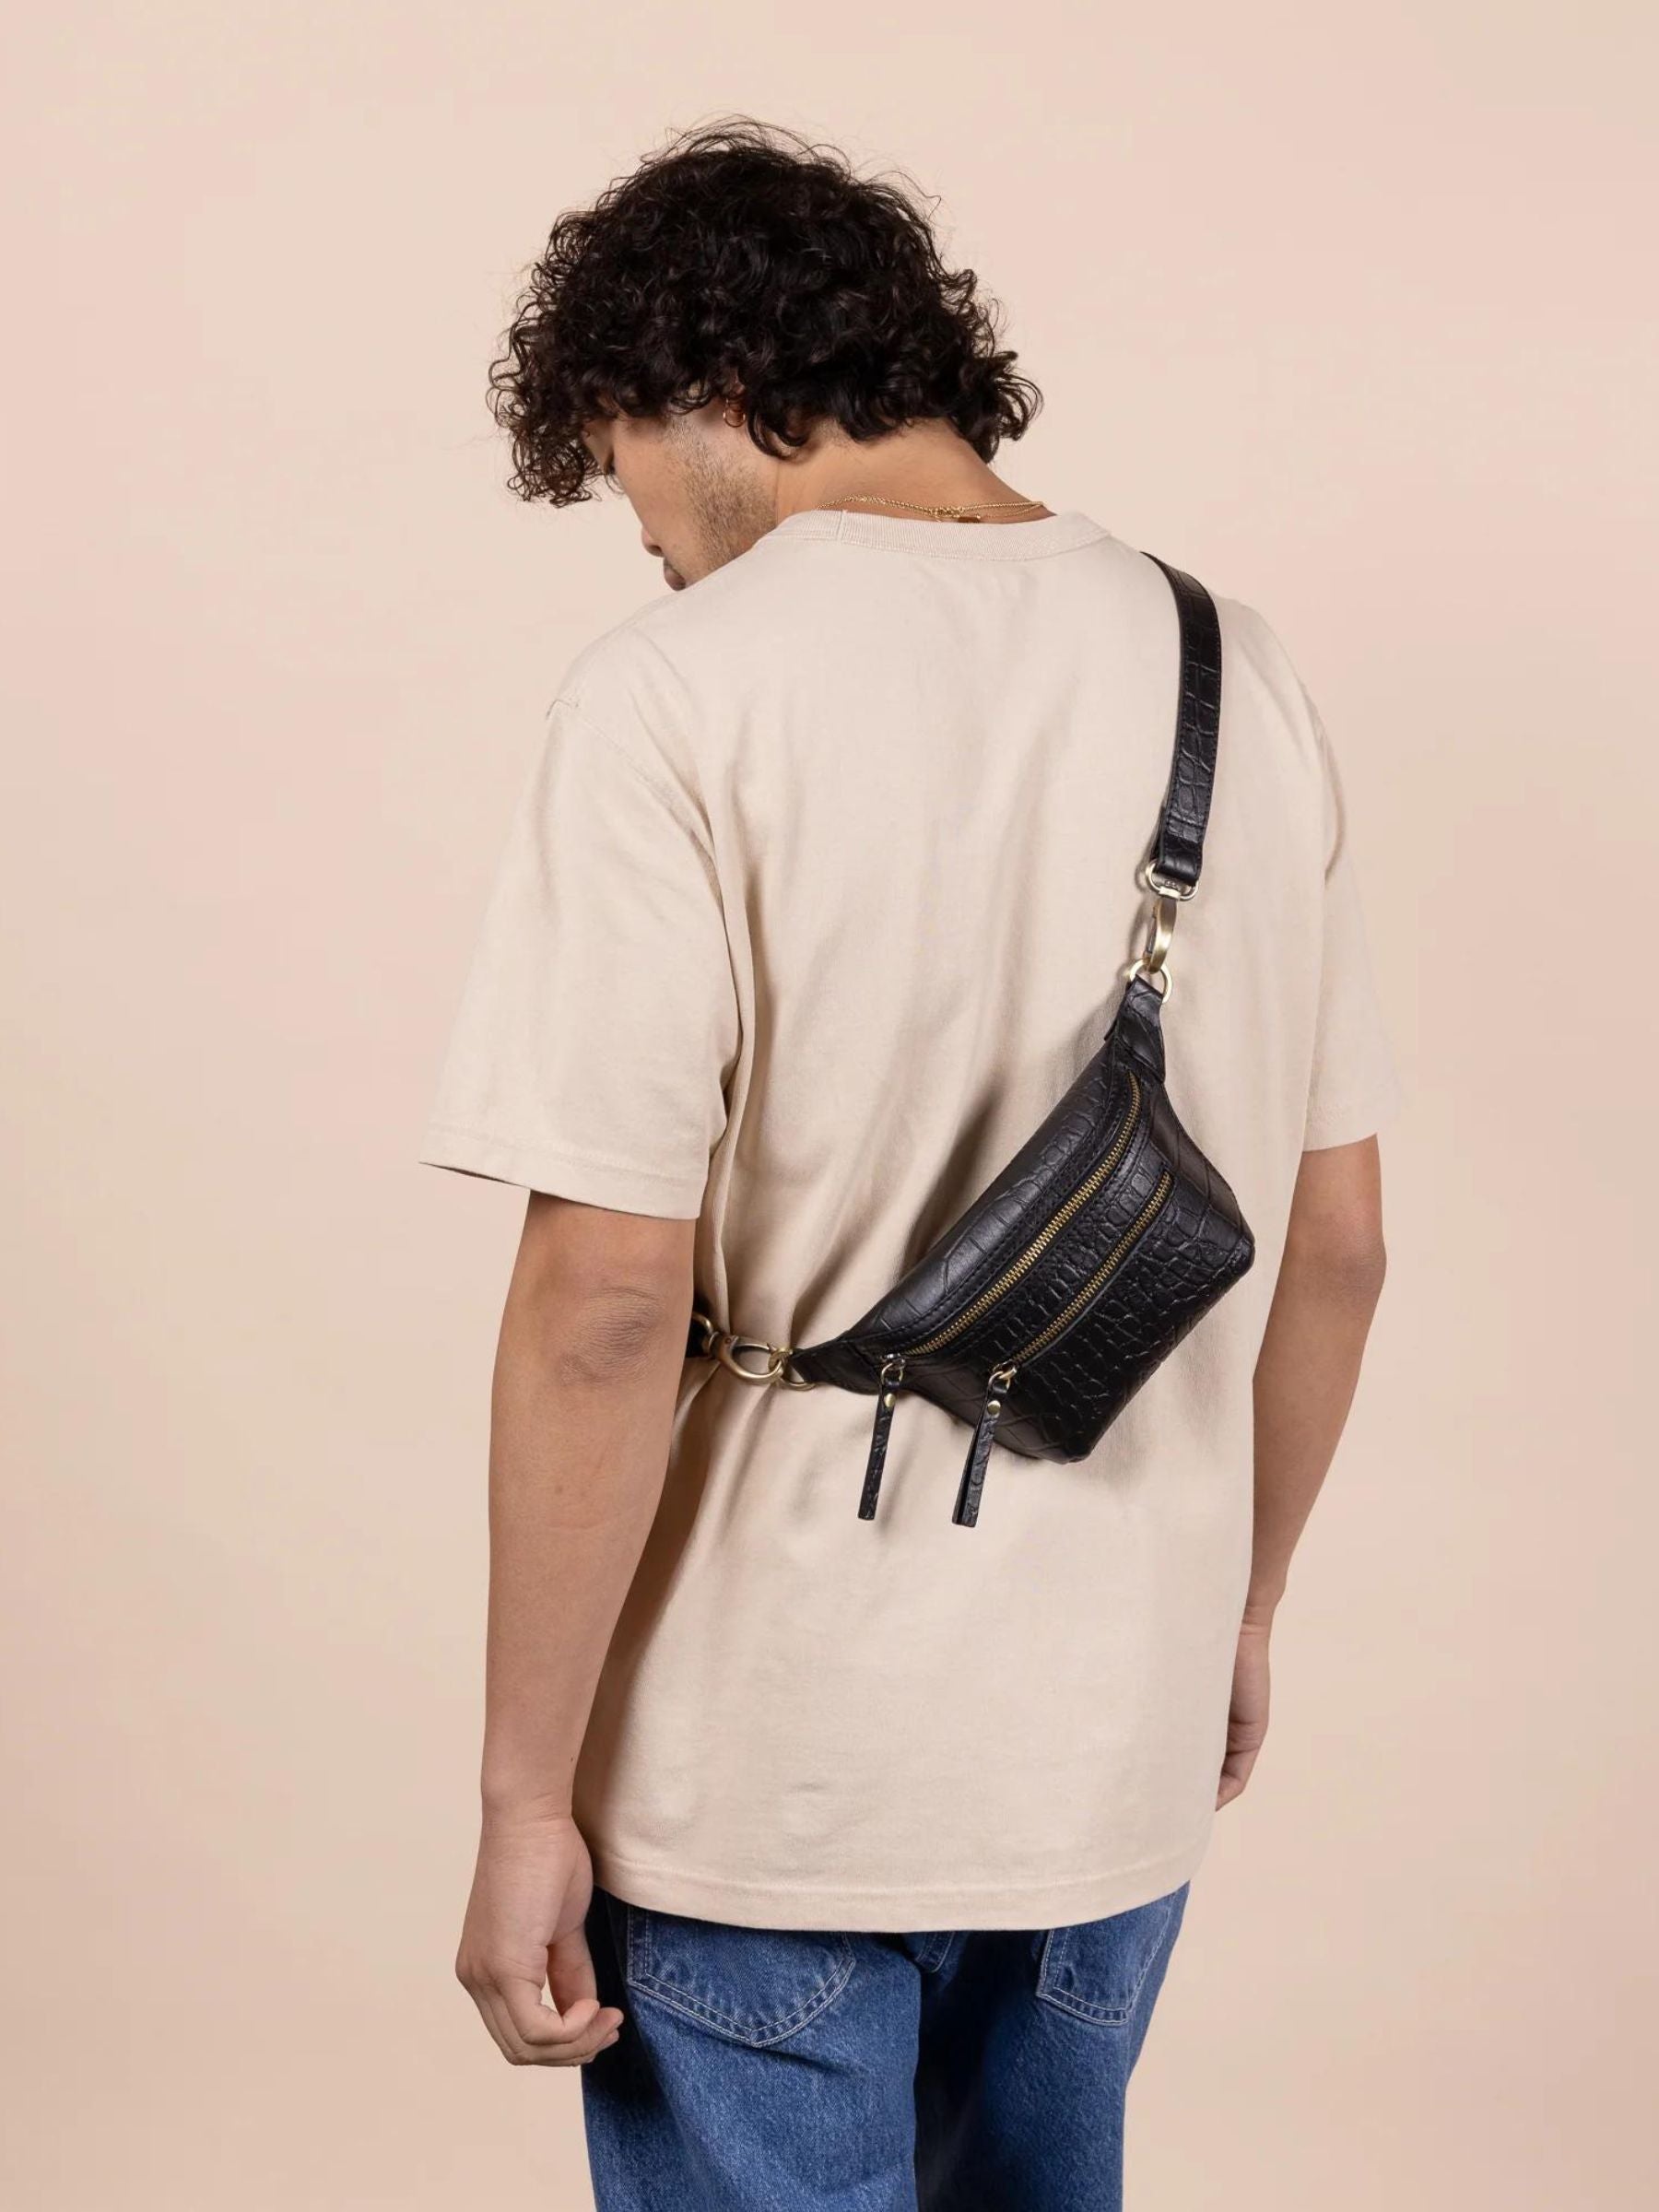 Becks Penner Bag Black Croco | O My Bag